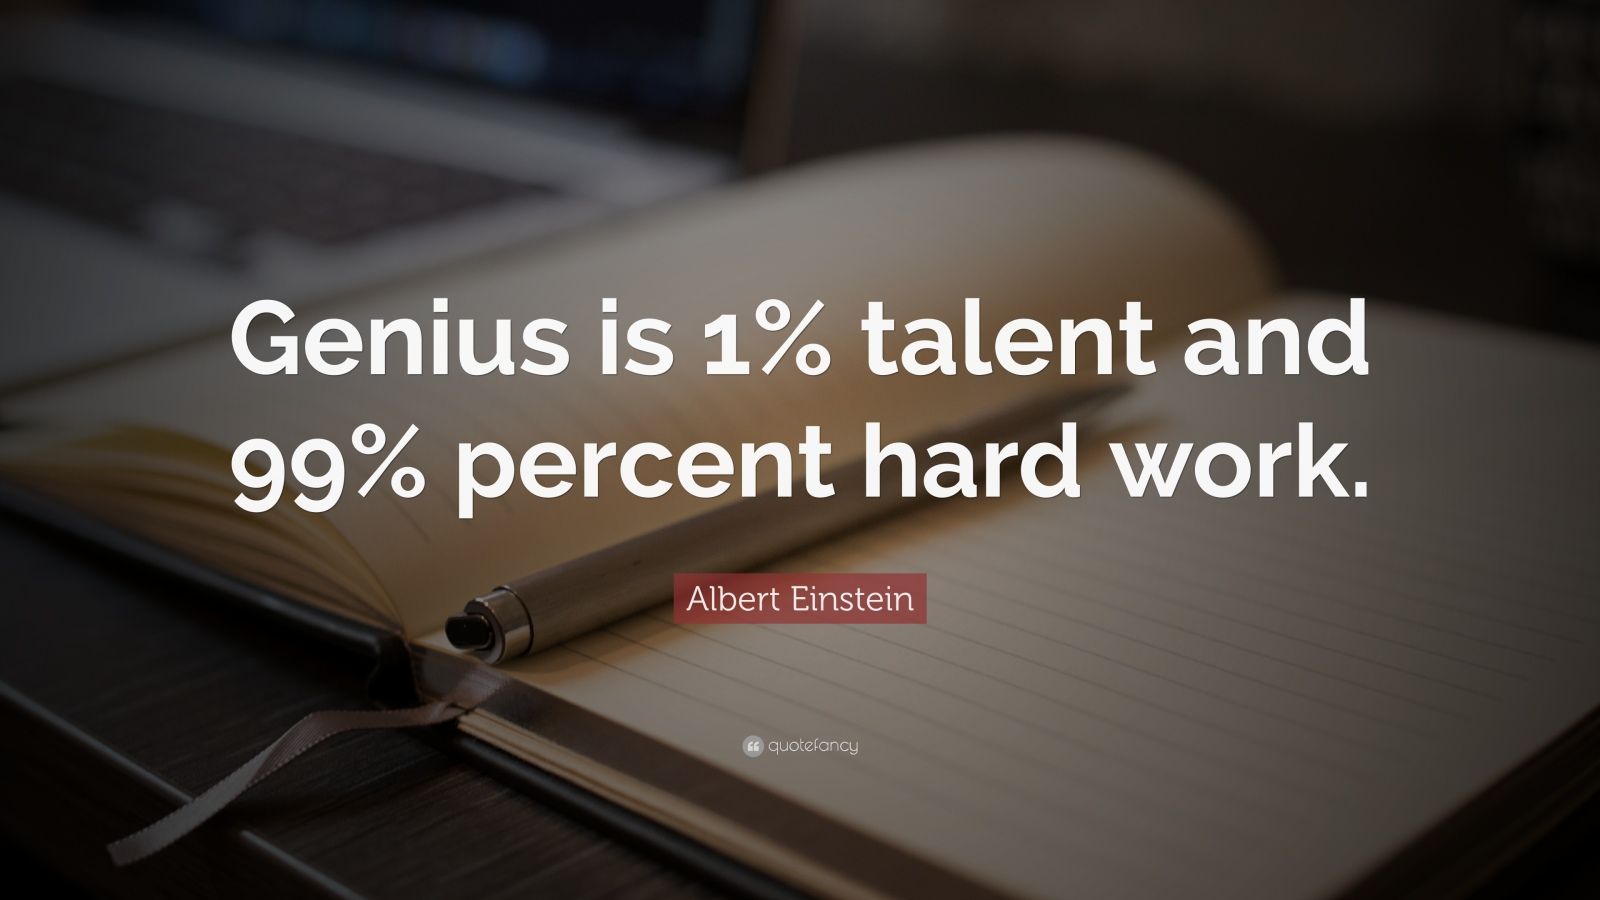 Albert Einstein Quote: “Genius is 1% talent and 99% percent hard work.”